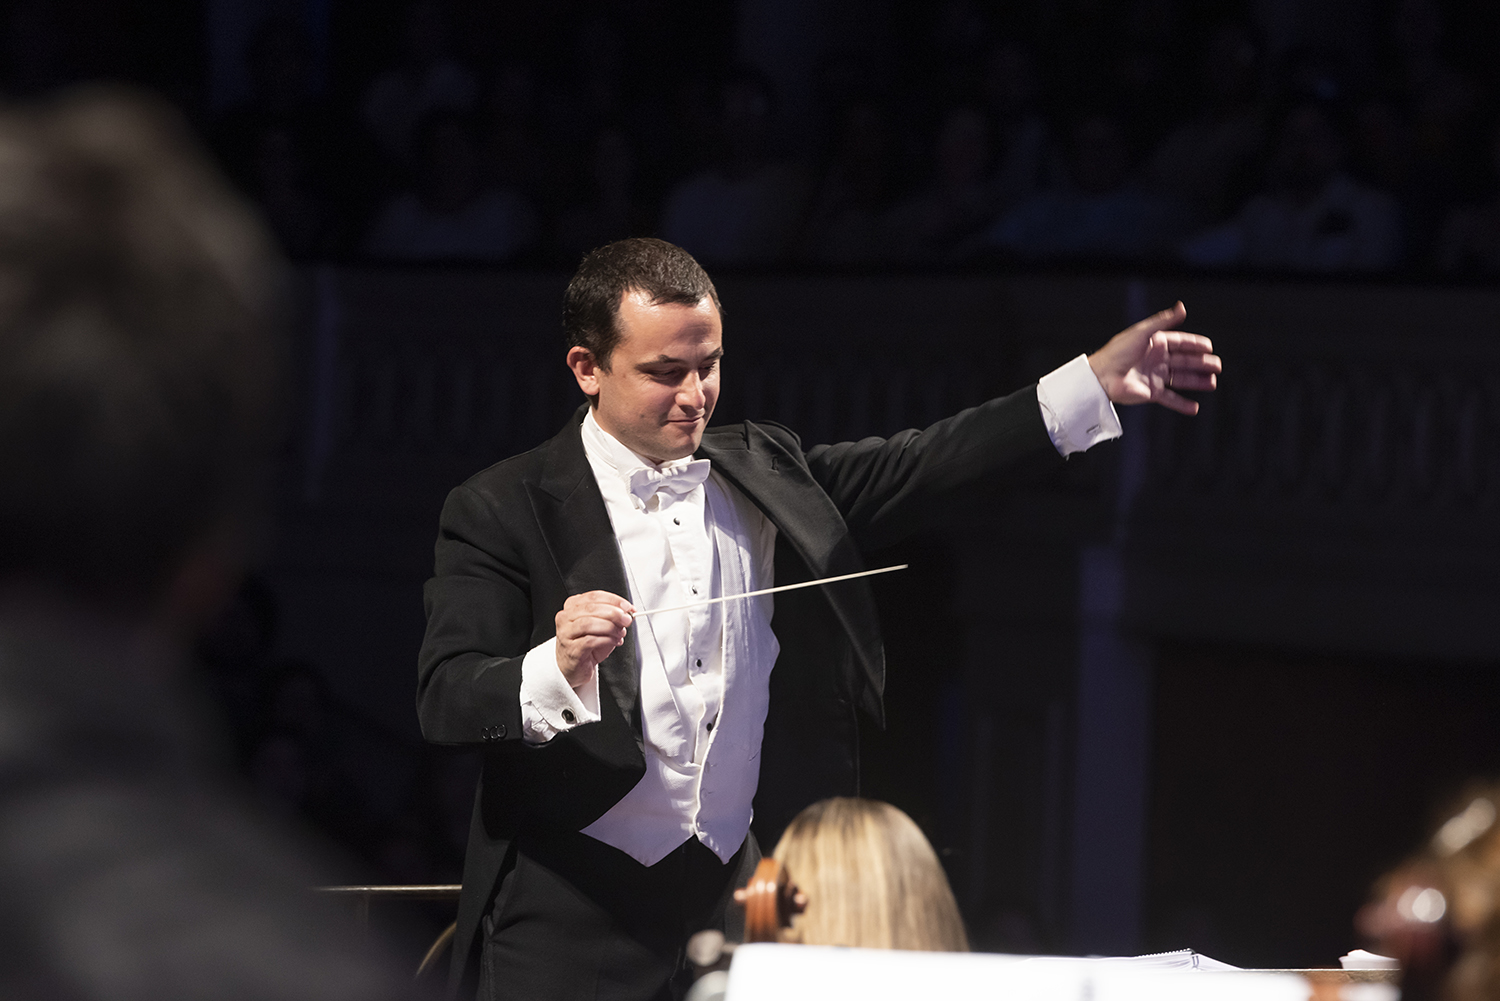 Imperdible repertorio sinfónico alemán en el Municipal de Santiago: Pedro-Pablo Prudencio dirige la gran “Sinfonía Alpina” de Strauss